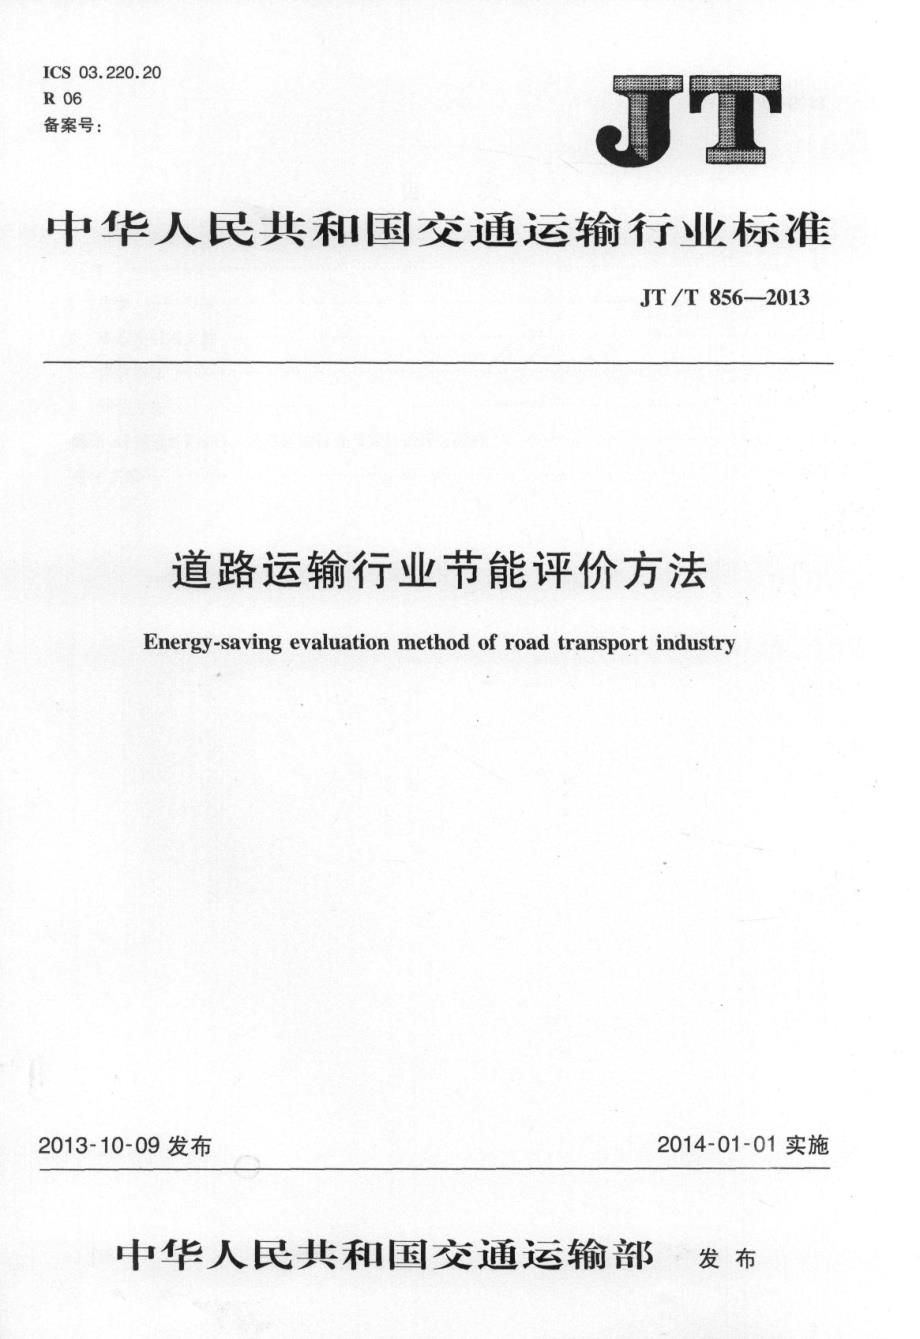 【交通路桥规范】JTT856-2013 道路运输行业节能评价方法_第1页